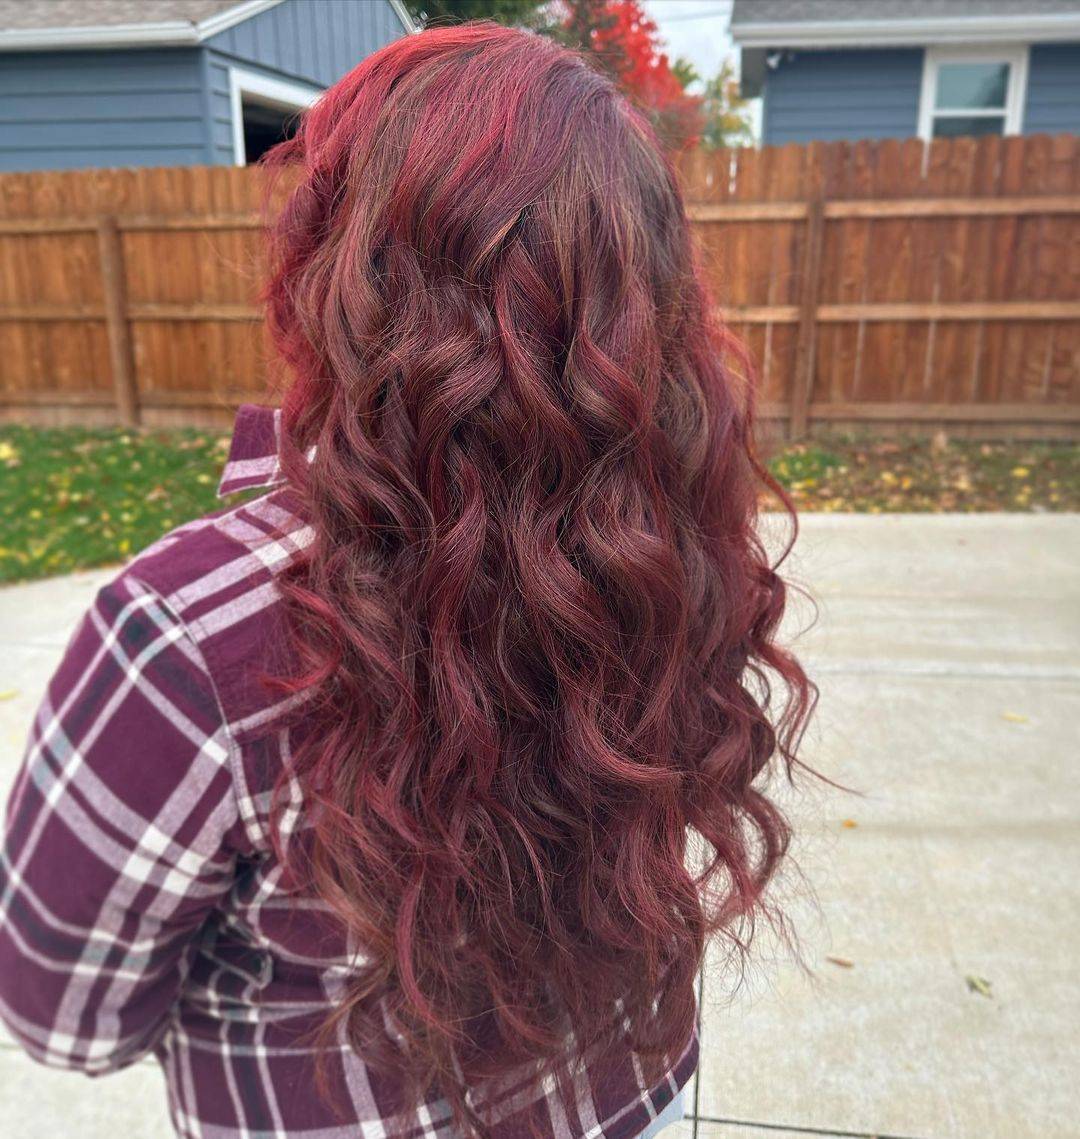 Burgundy hair color 213 burgundy hair color | burgundy hair color for women | burgundy hair color highlights Burgundy Hair Color